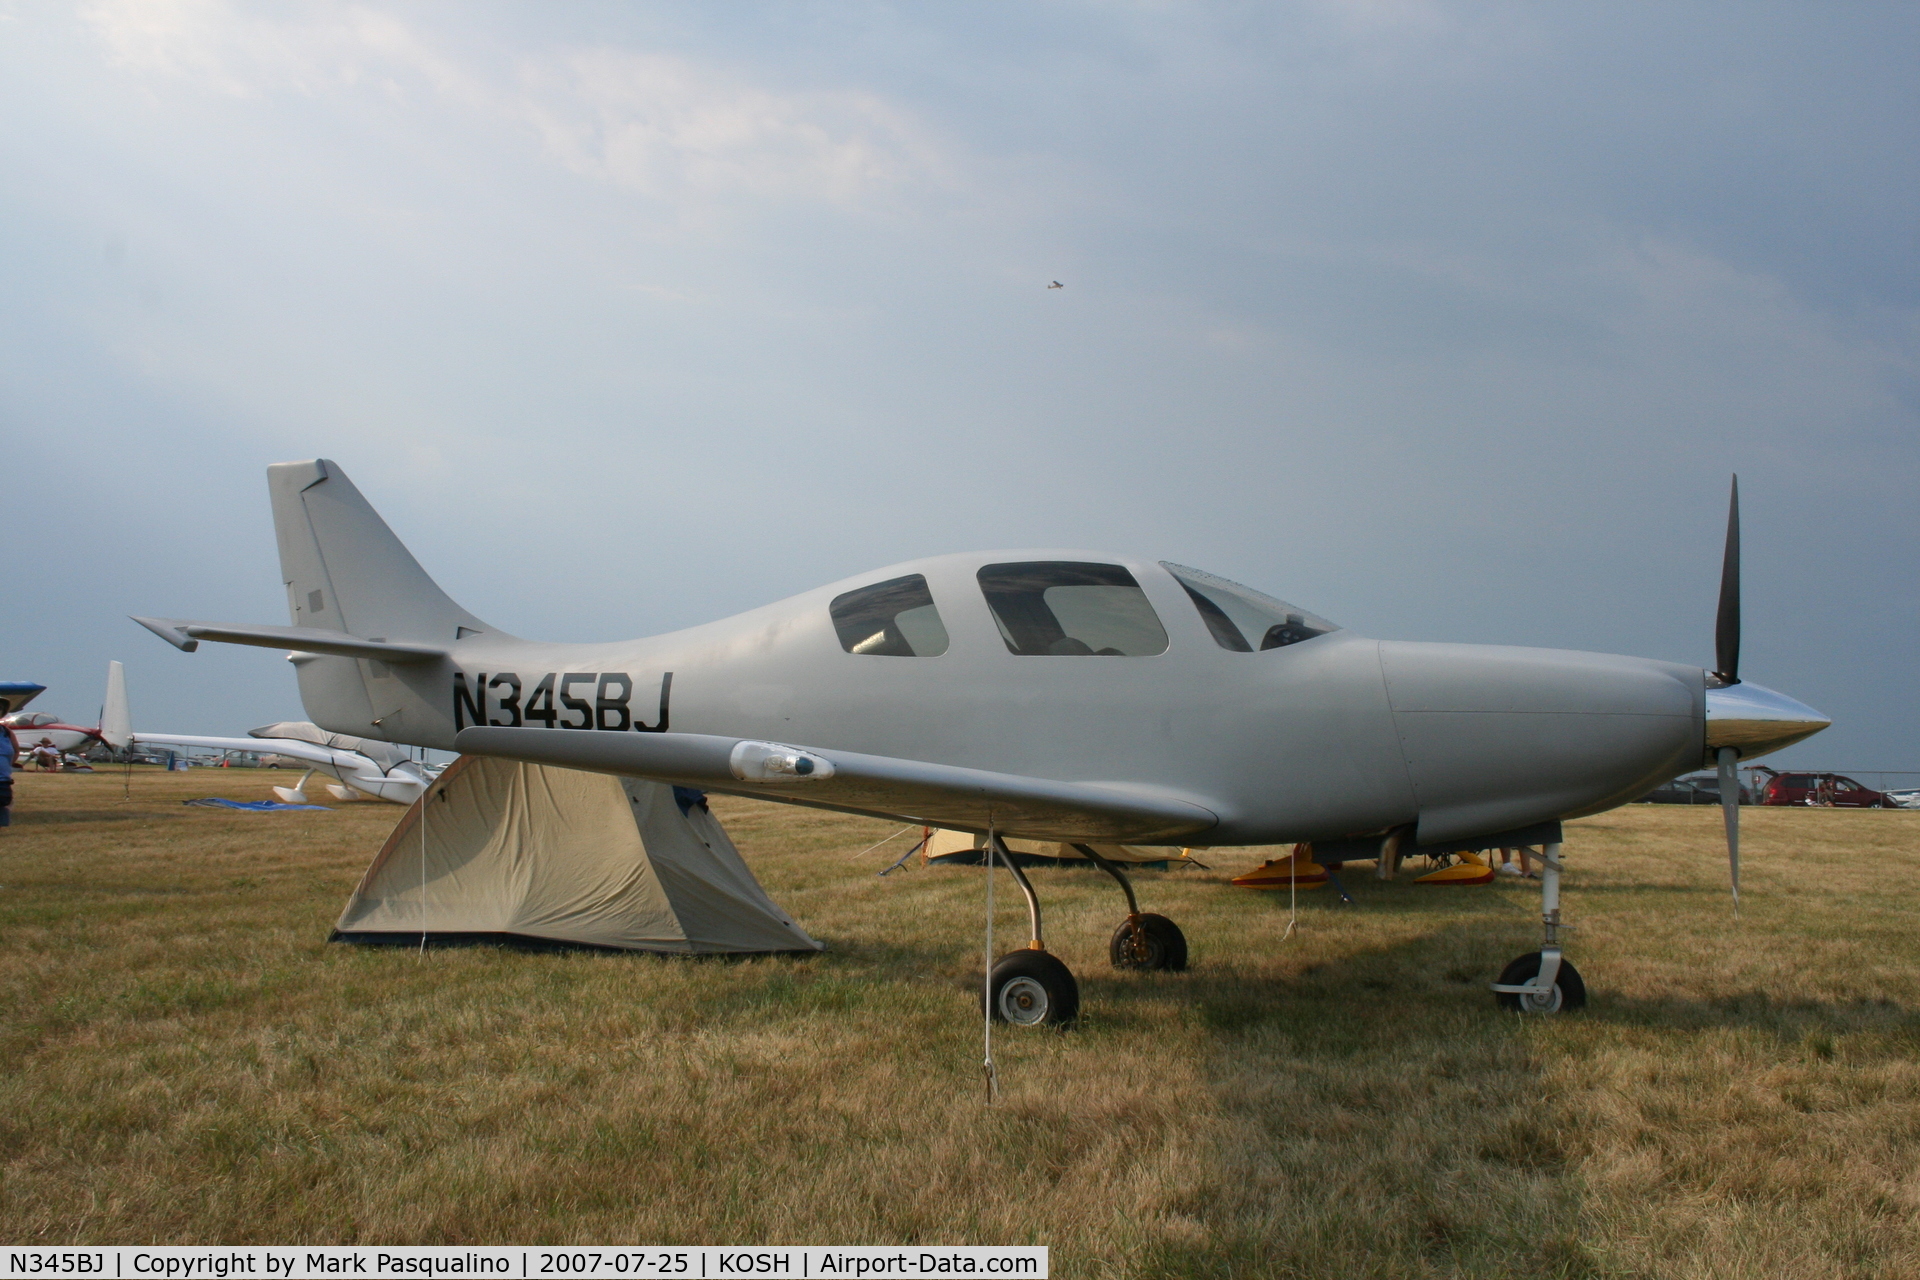 N345BJ, 2007 Lancair IV C/N 015, Lancair IV